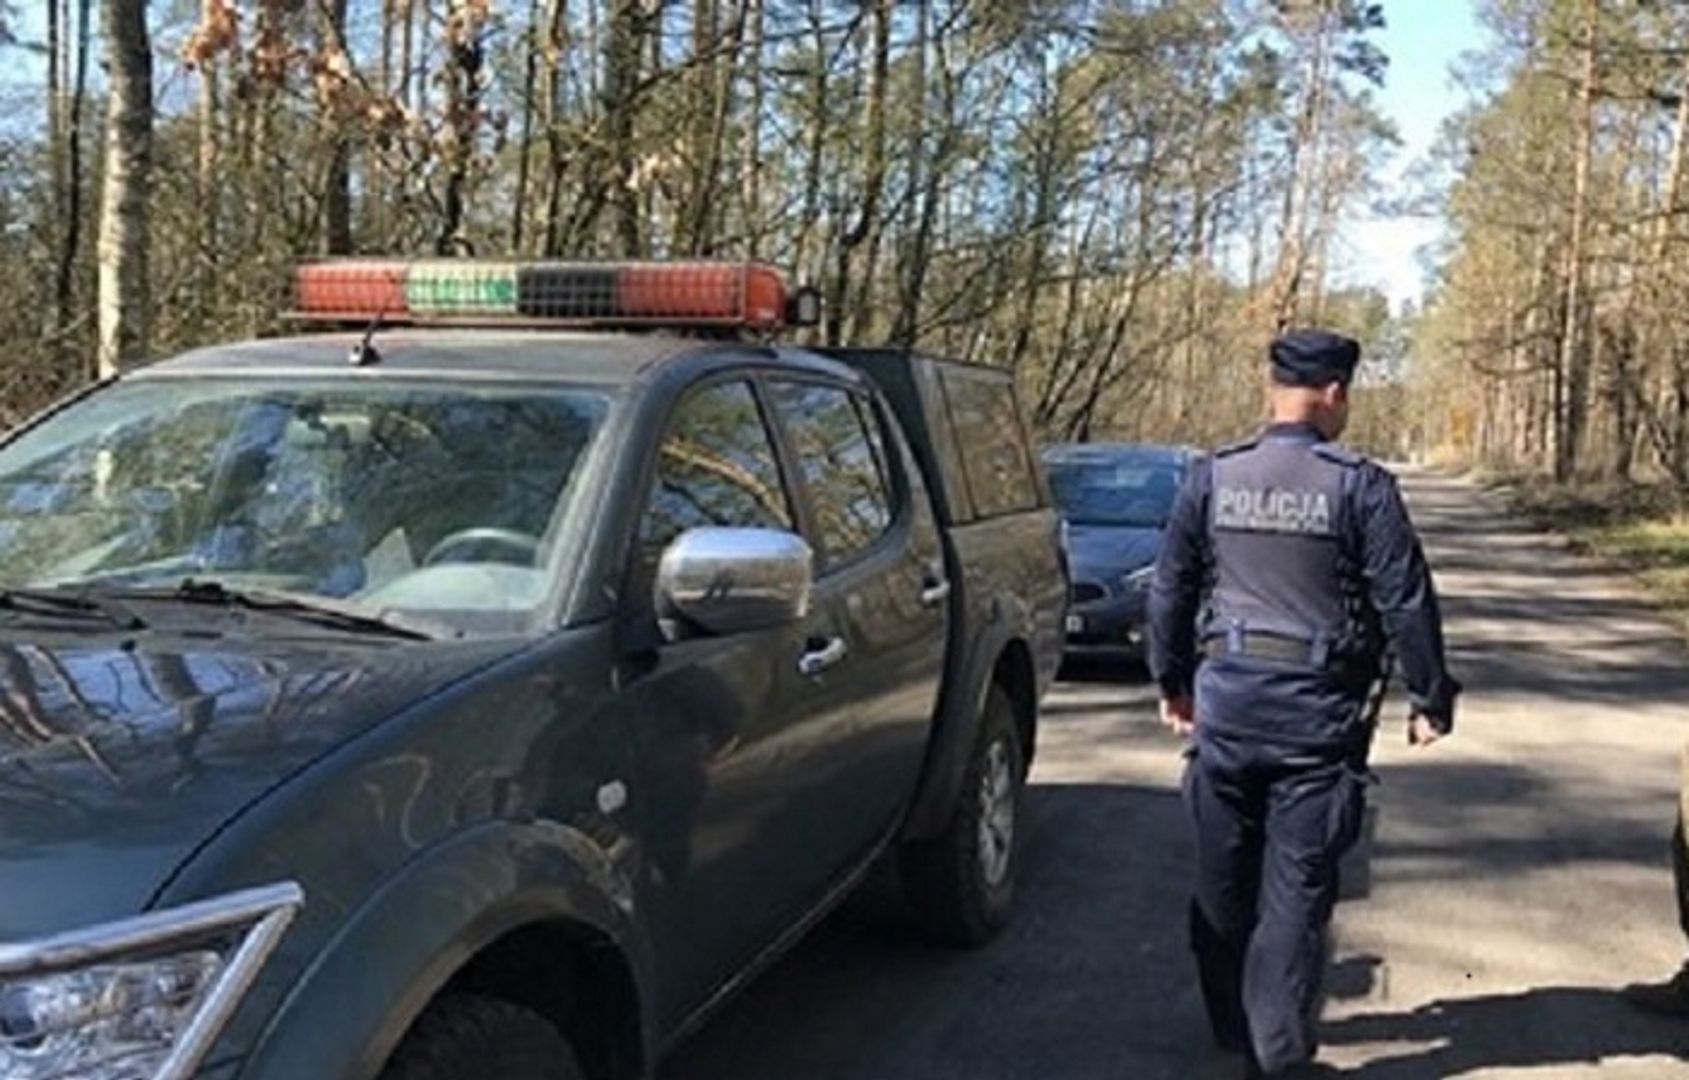 Ktoś kradnie drzewa. Policja szuka pokrzywdzonych właścicieli lasu